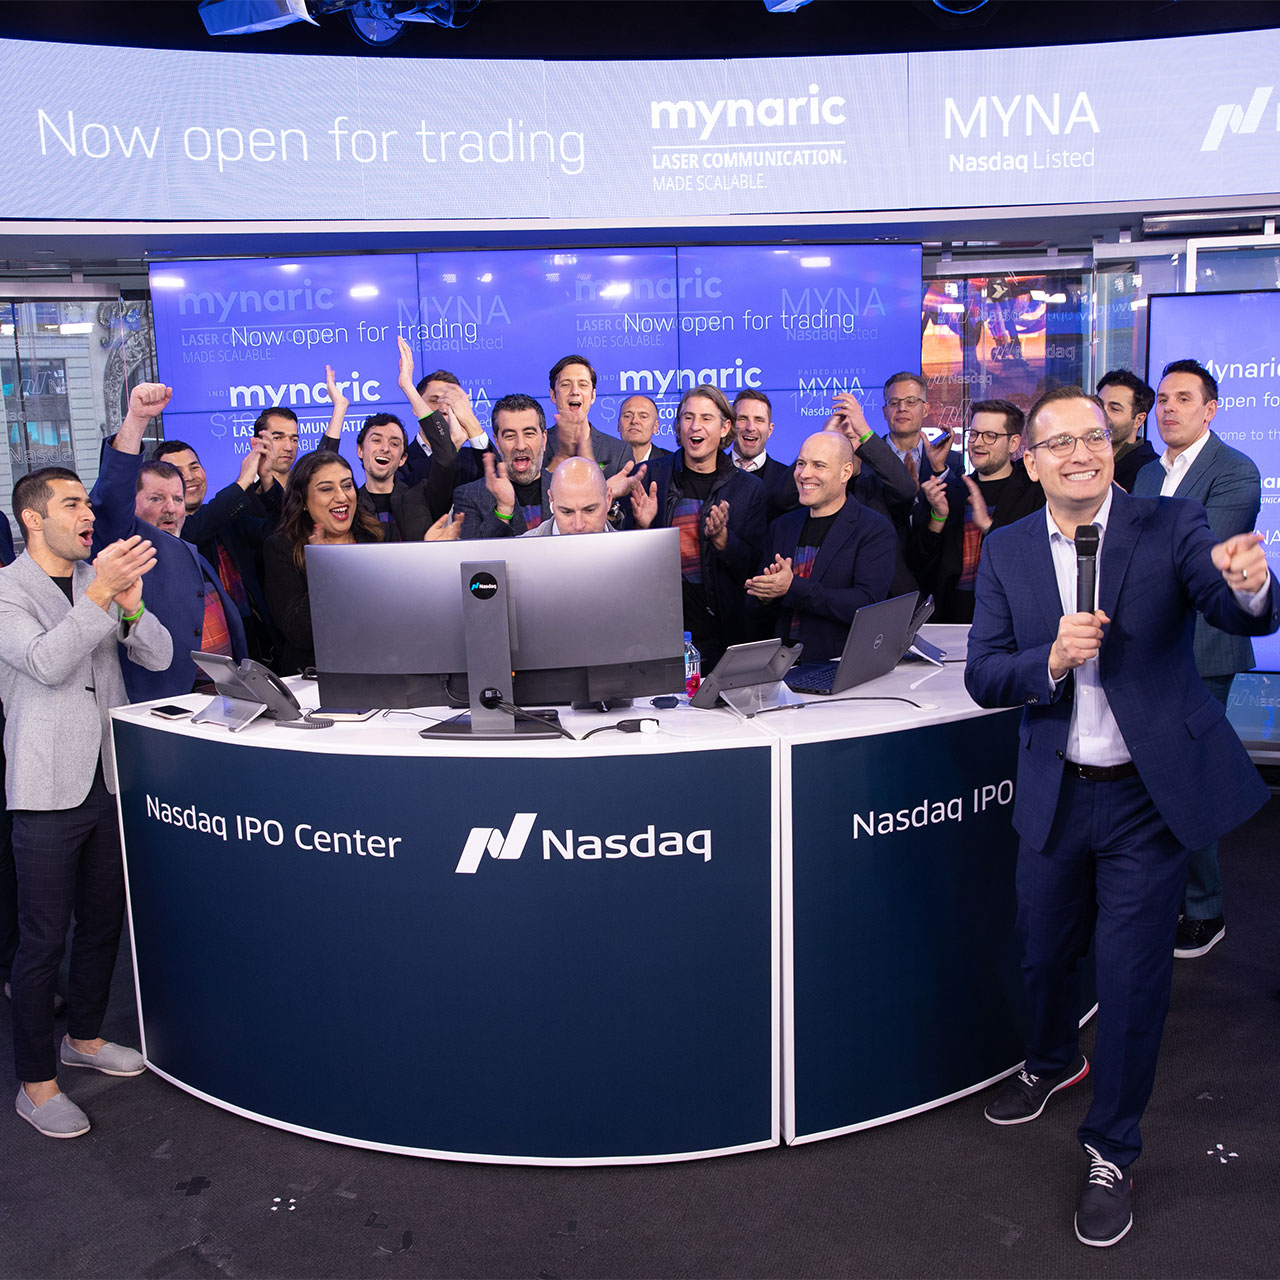 Gruppenfoto des Mynaric Teams, während sie lachen und klatschen am Tag des Börsengangs. Sie stehen im Nasdaq IPO Center.